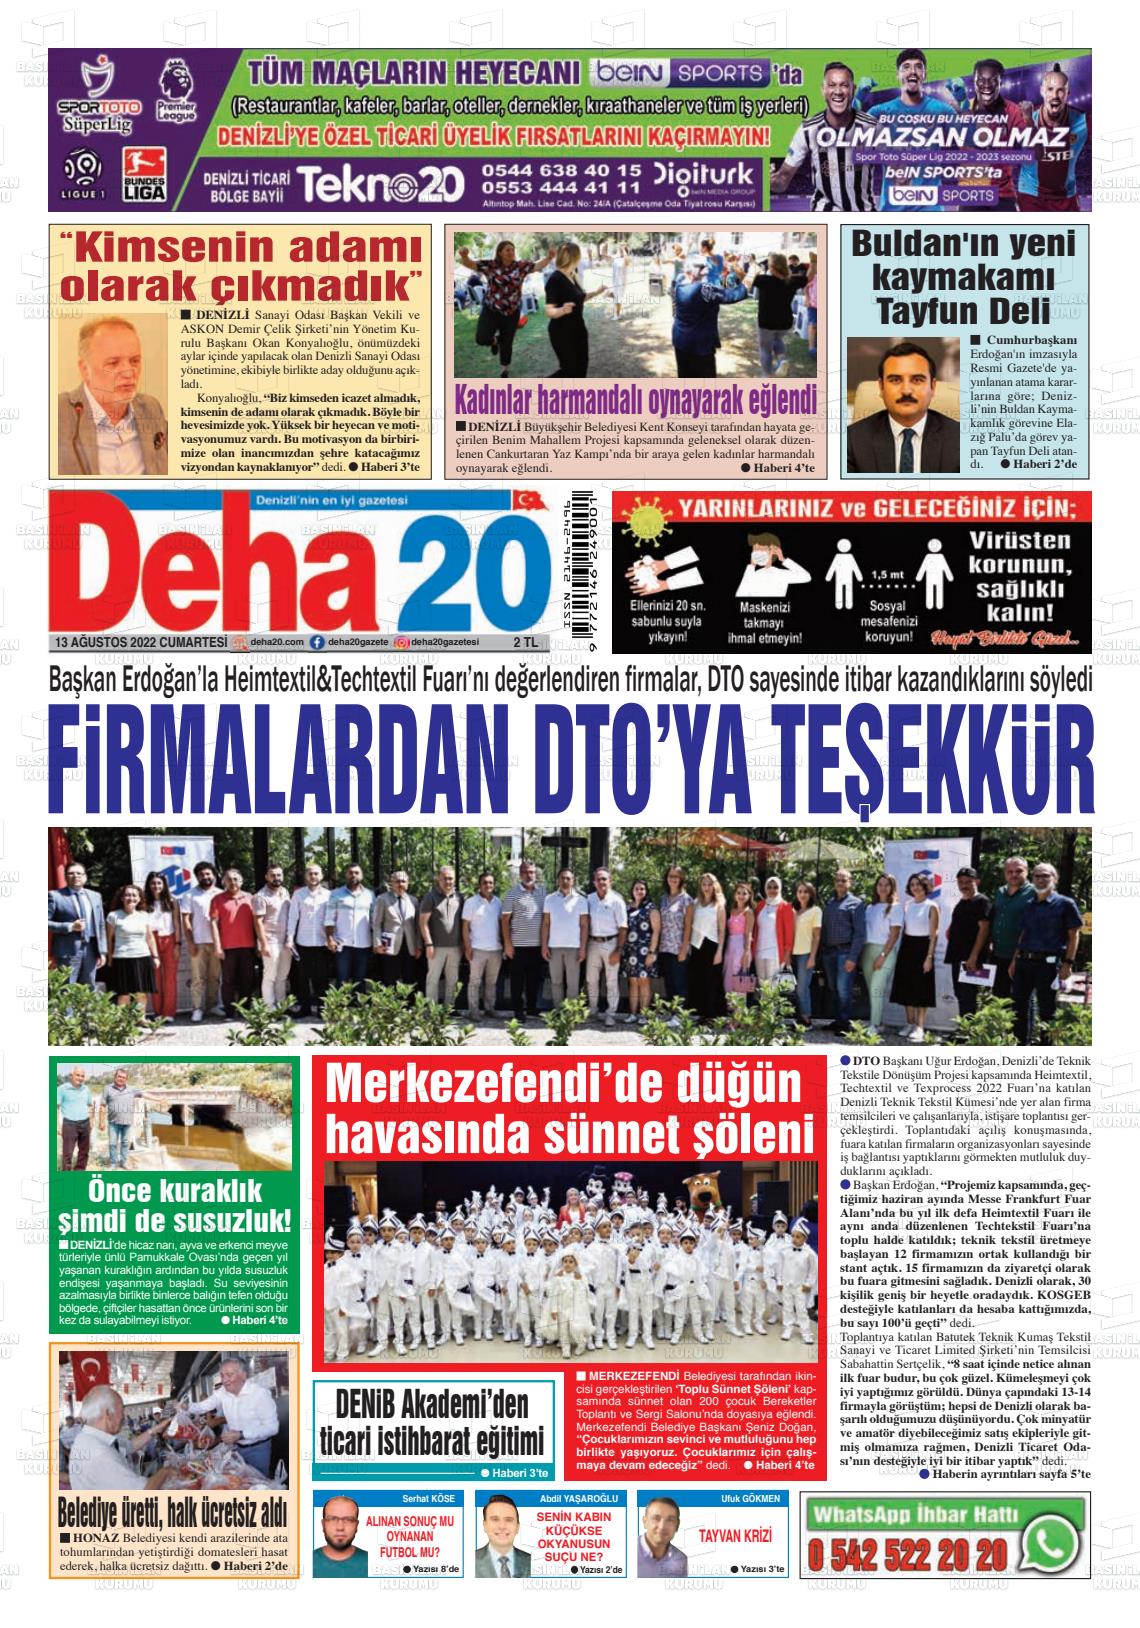 13 Ağustos 2022 Deha 20 Gazete Manşeti